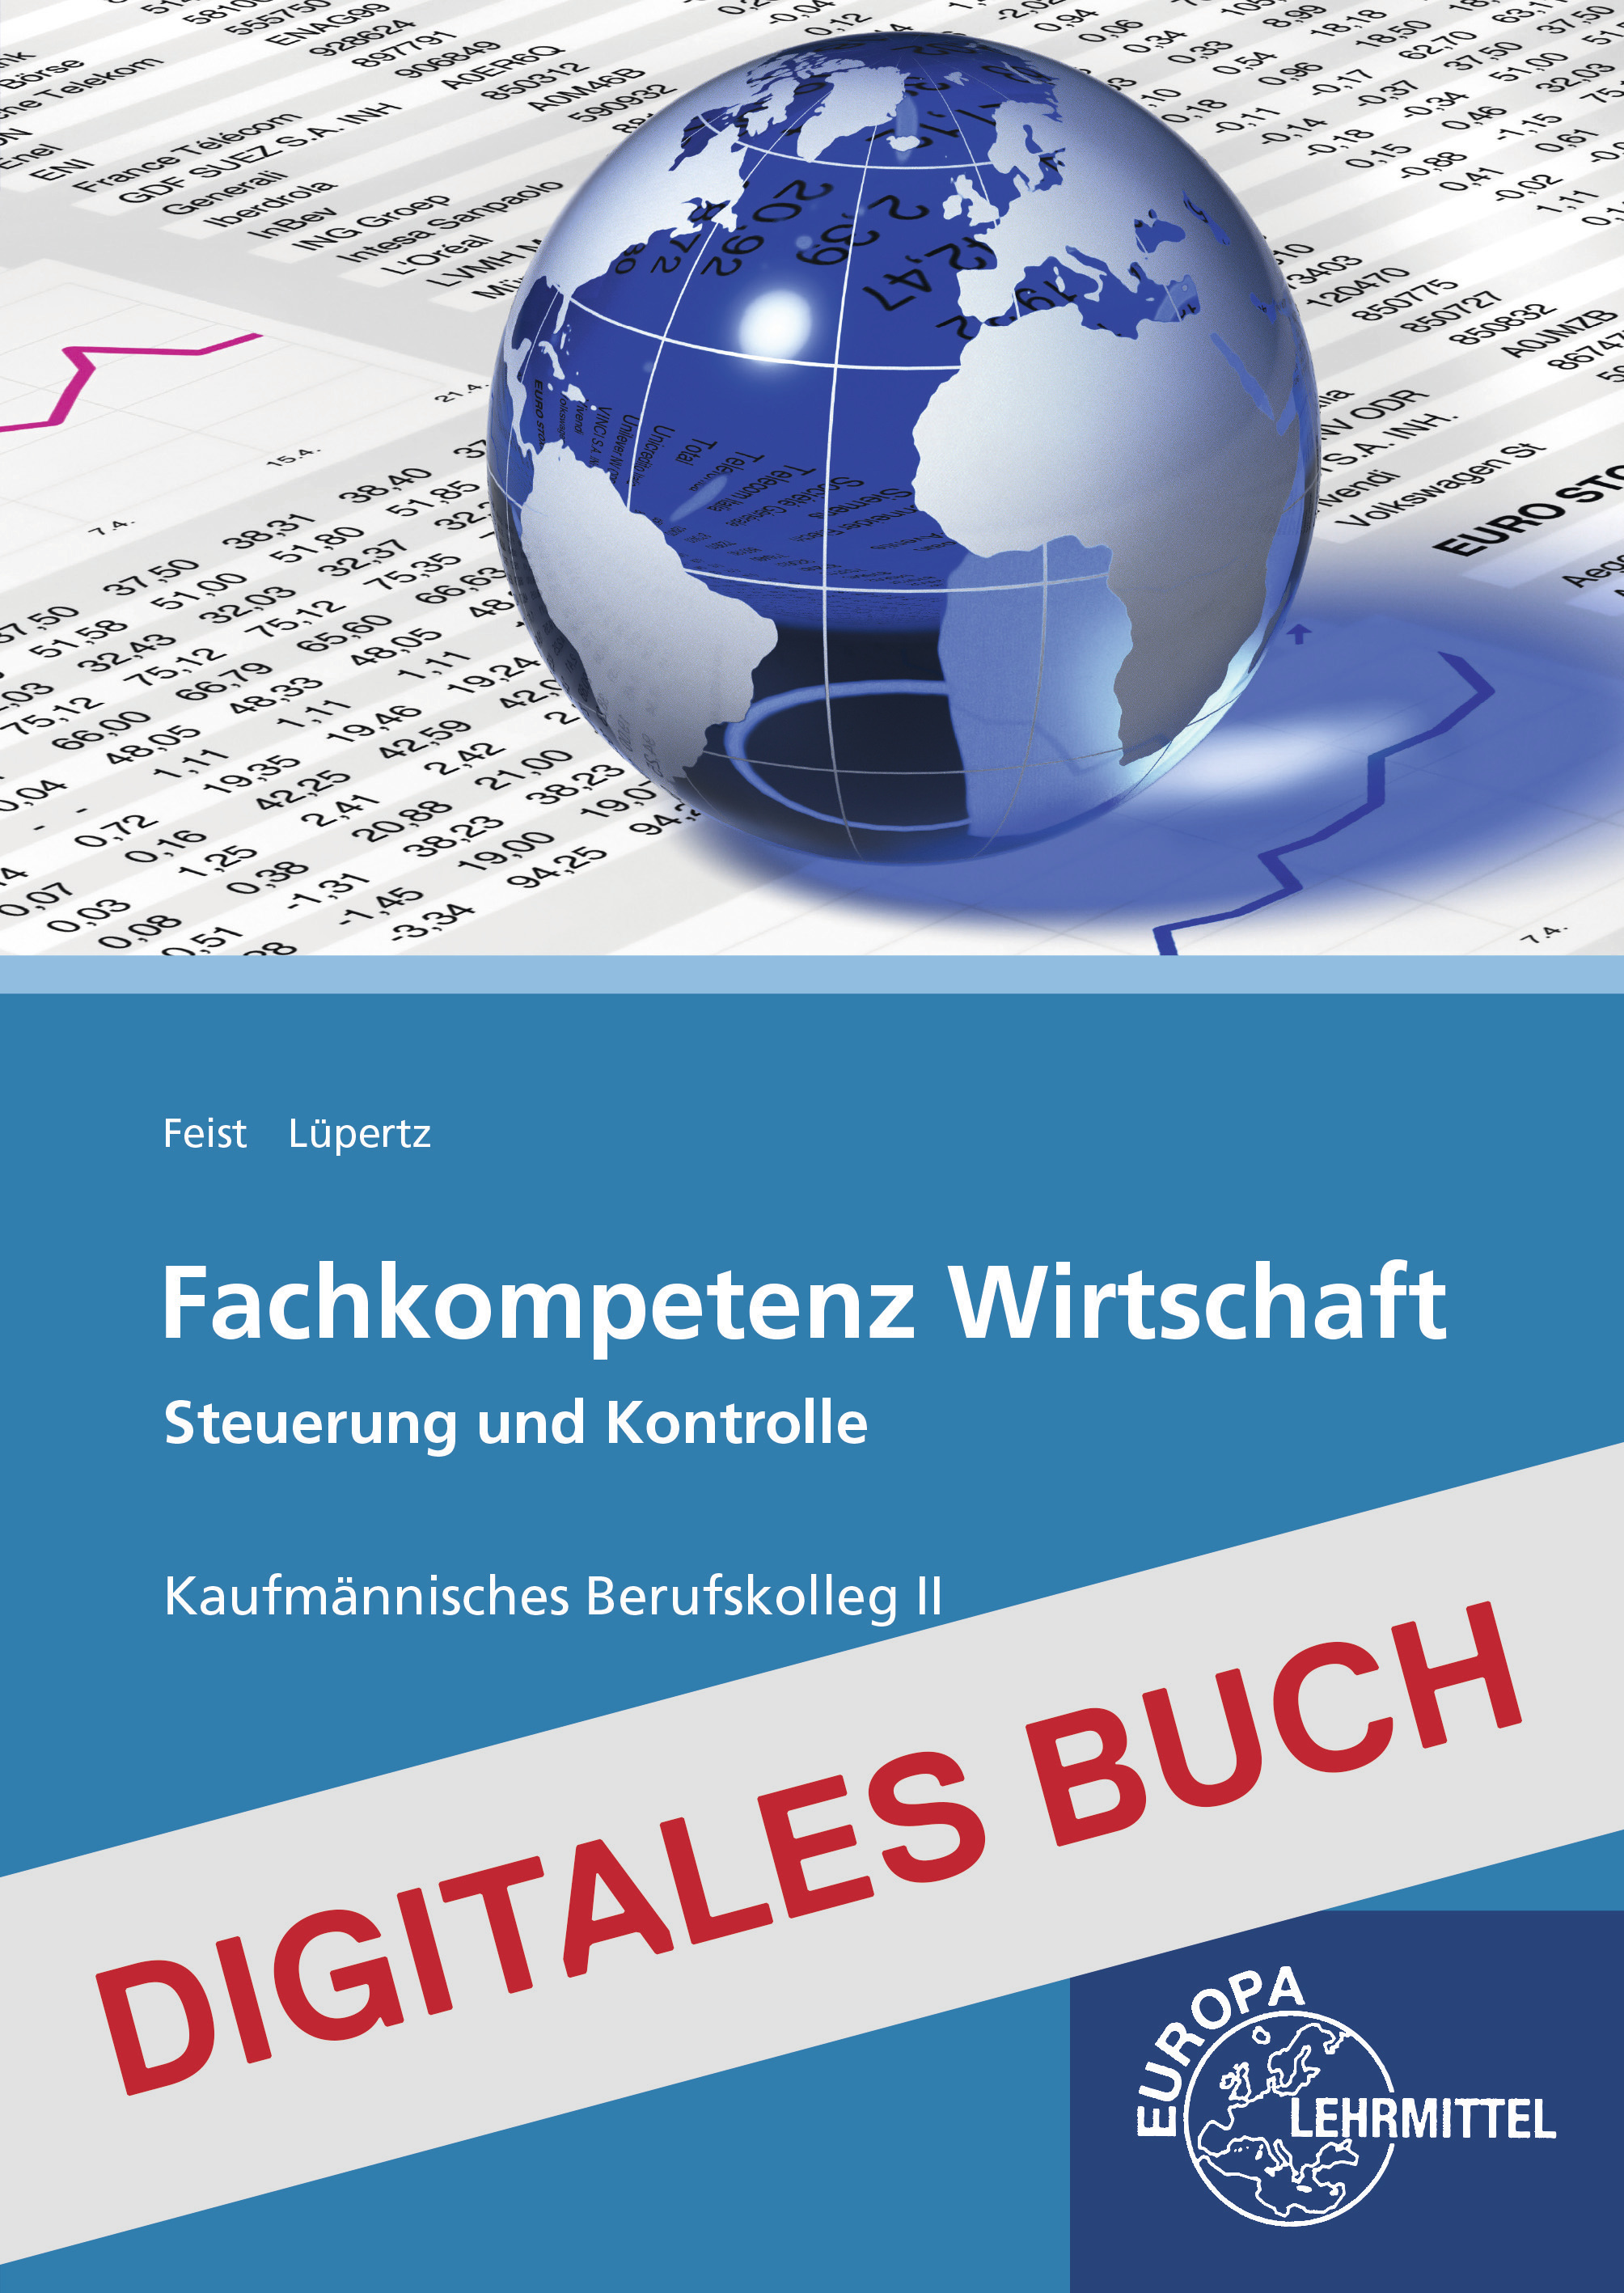 Fachkompetenz Wirtschaft - Steuerung und Kontrolle BKII - Digitales Buch